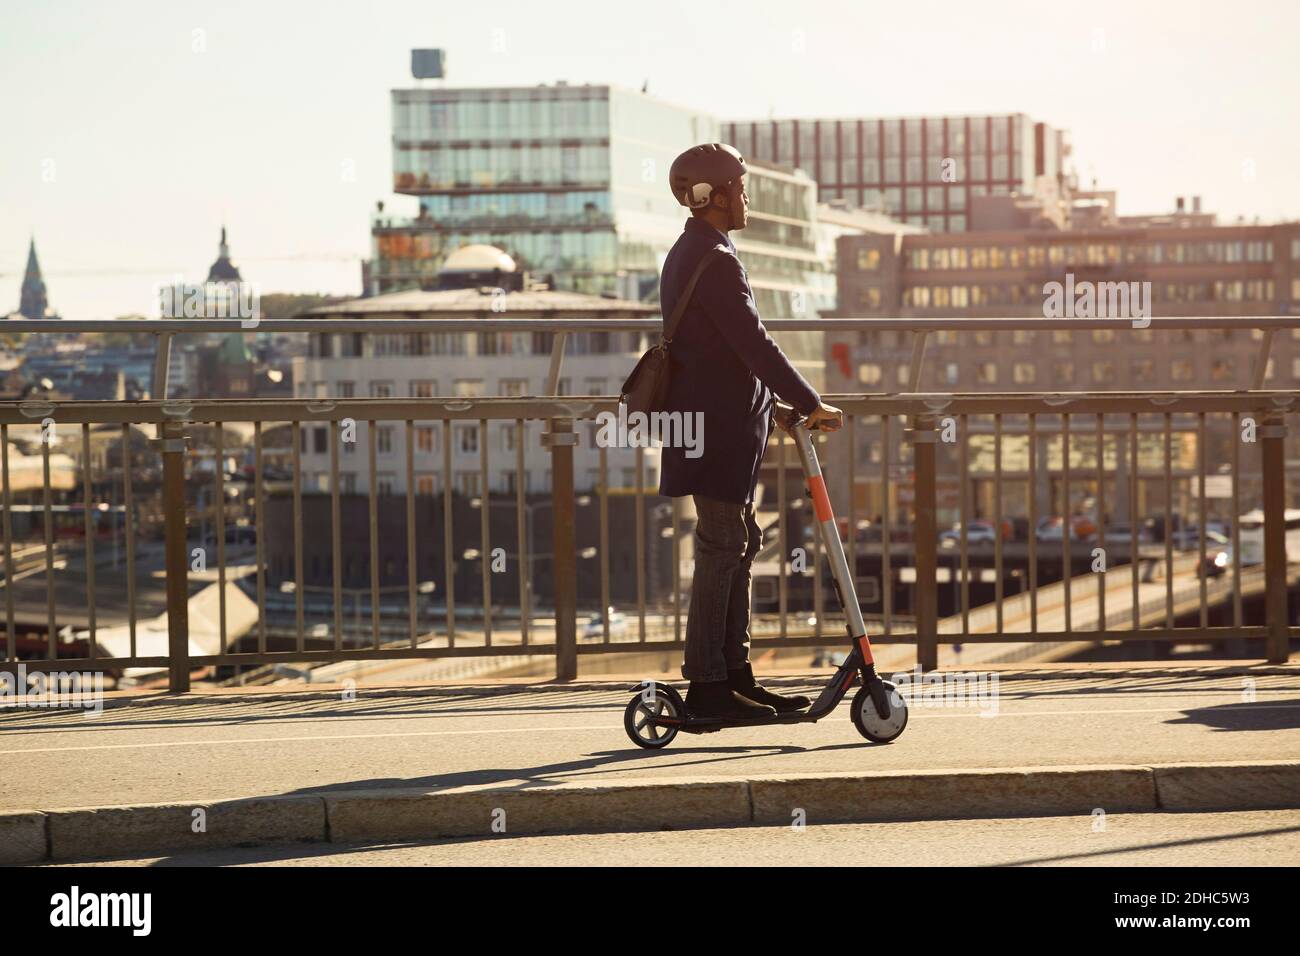 Toute la longueur du jeune homme qui roule sur un scooter électrique pont en ville Banque D'Images